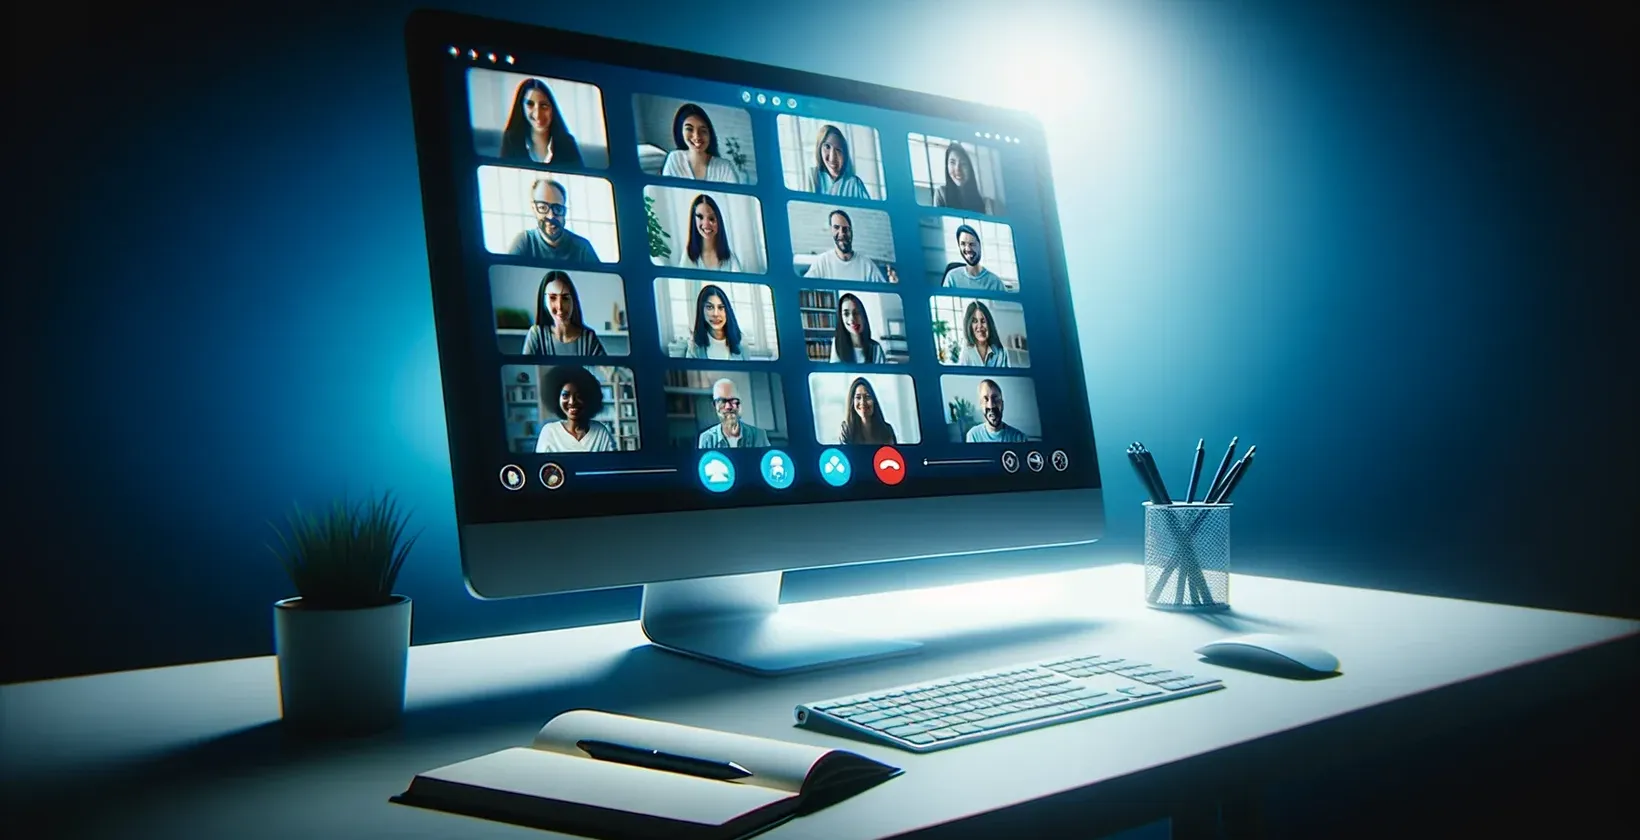 Obrázek obrazovky počítače zobrazující relaci GoToMeeting, na které je vidět skupina lidí a živý přepis.